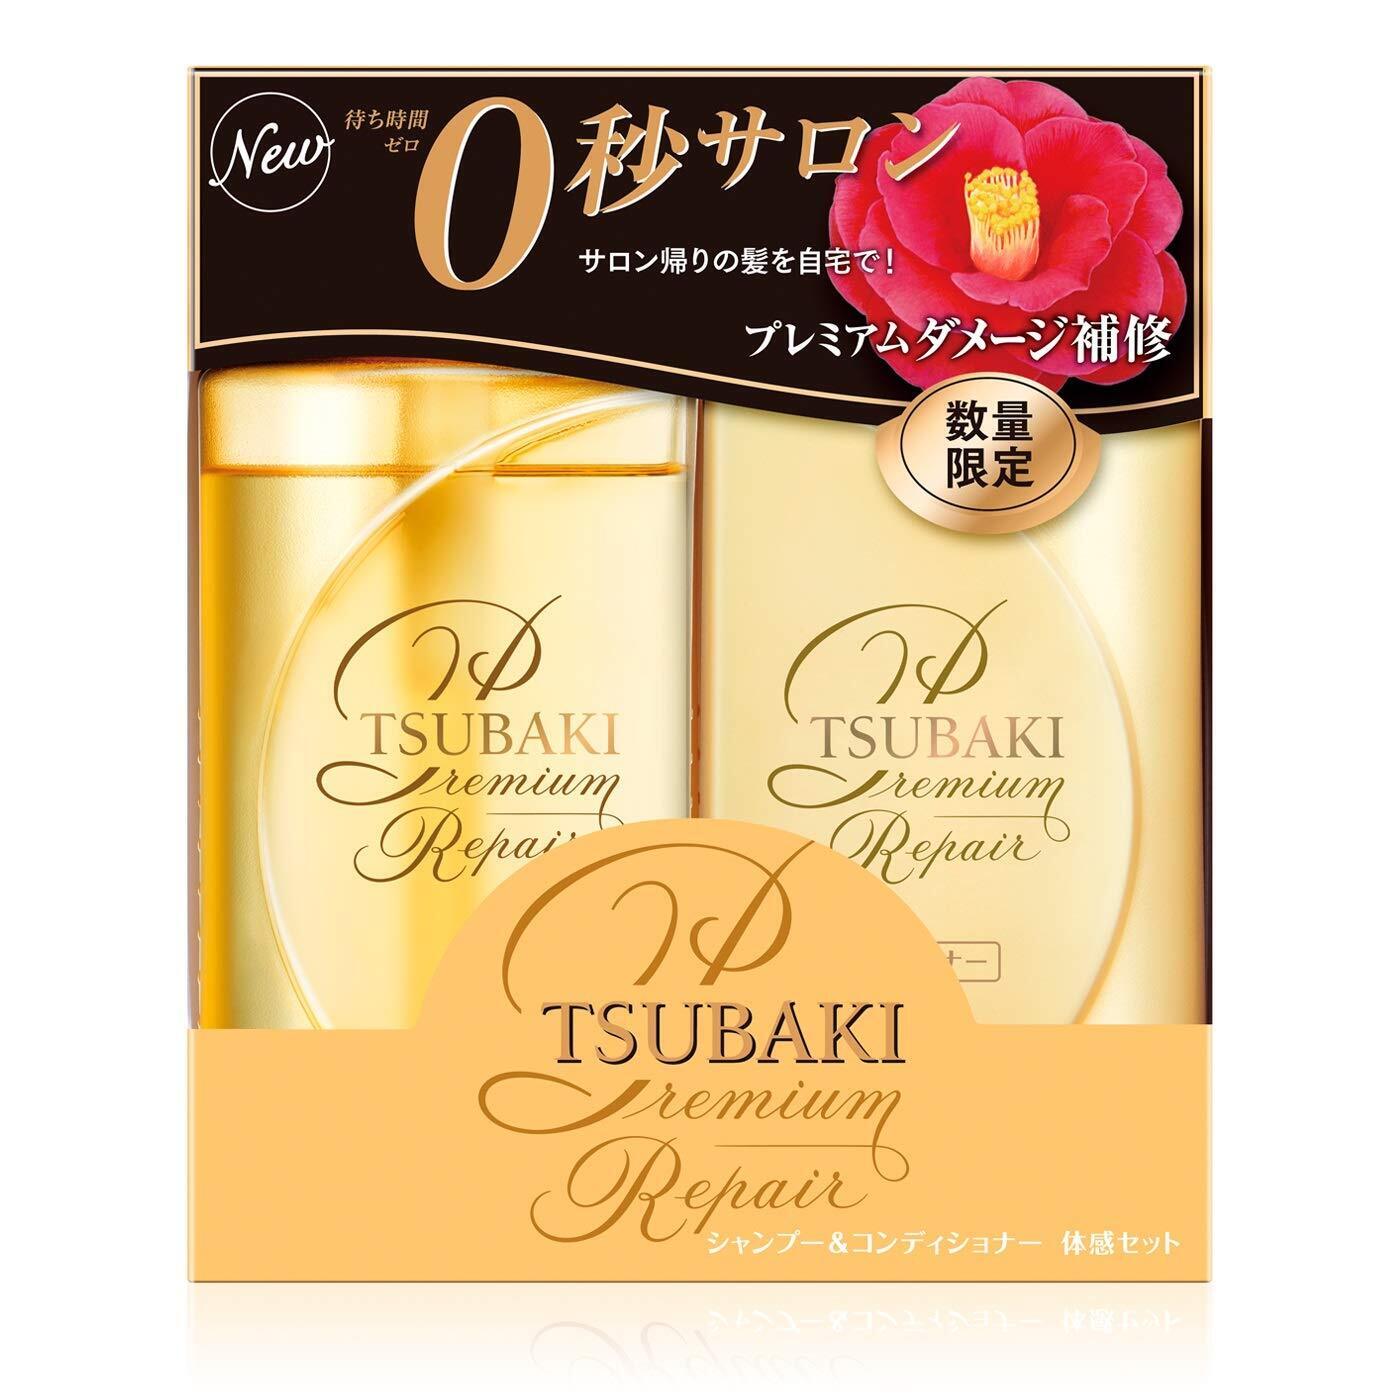 Premium Repair Hair Set - Tsubaki | Kiokii and...